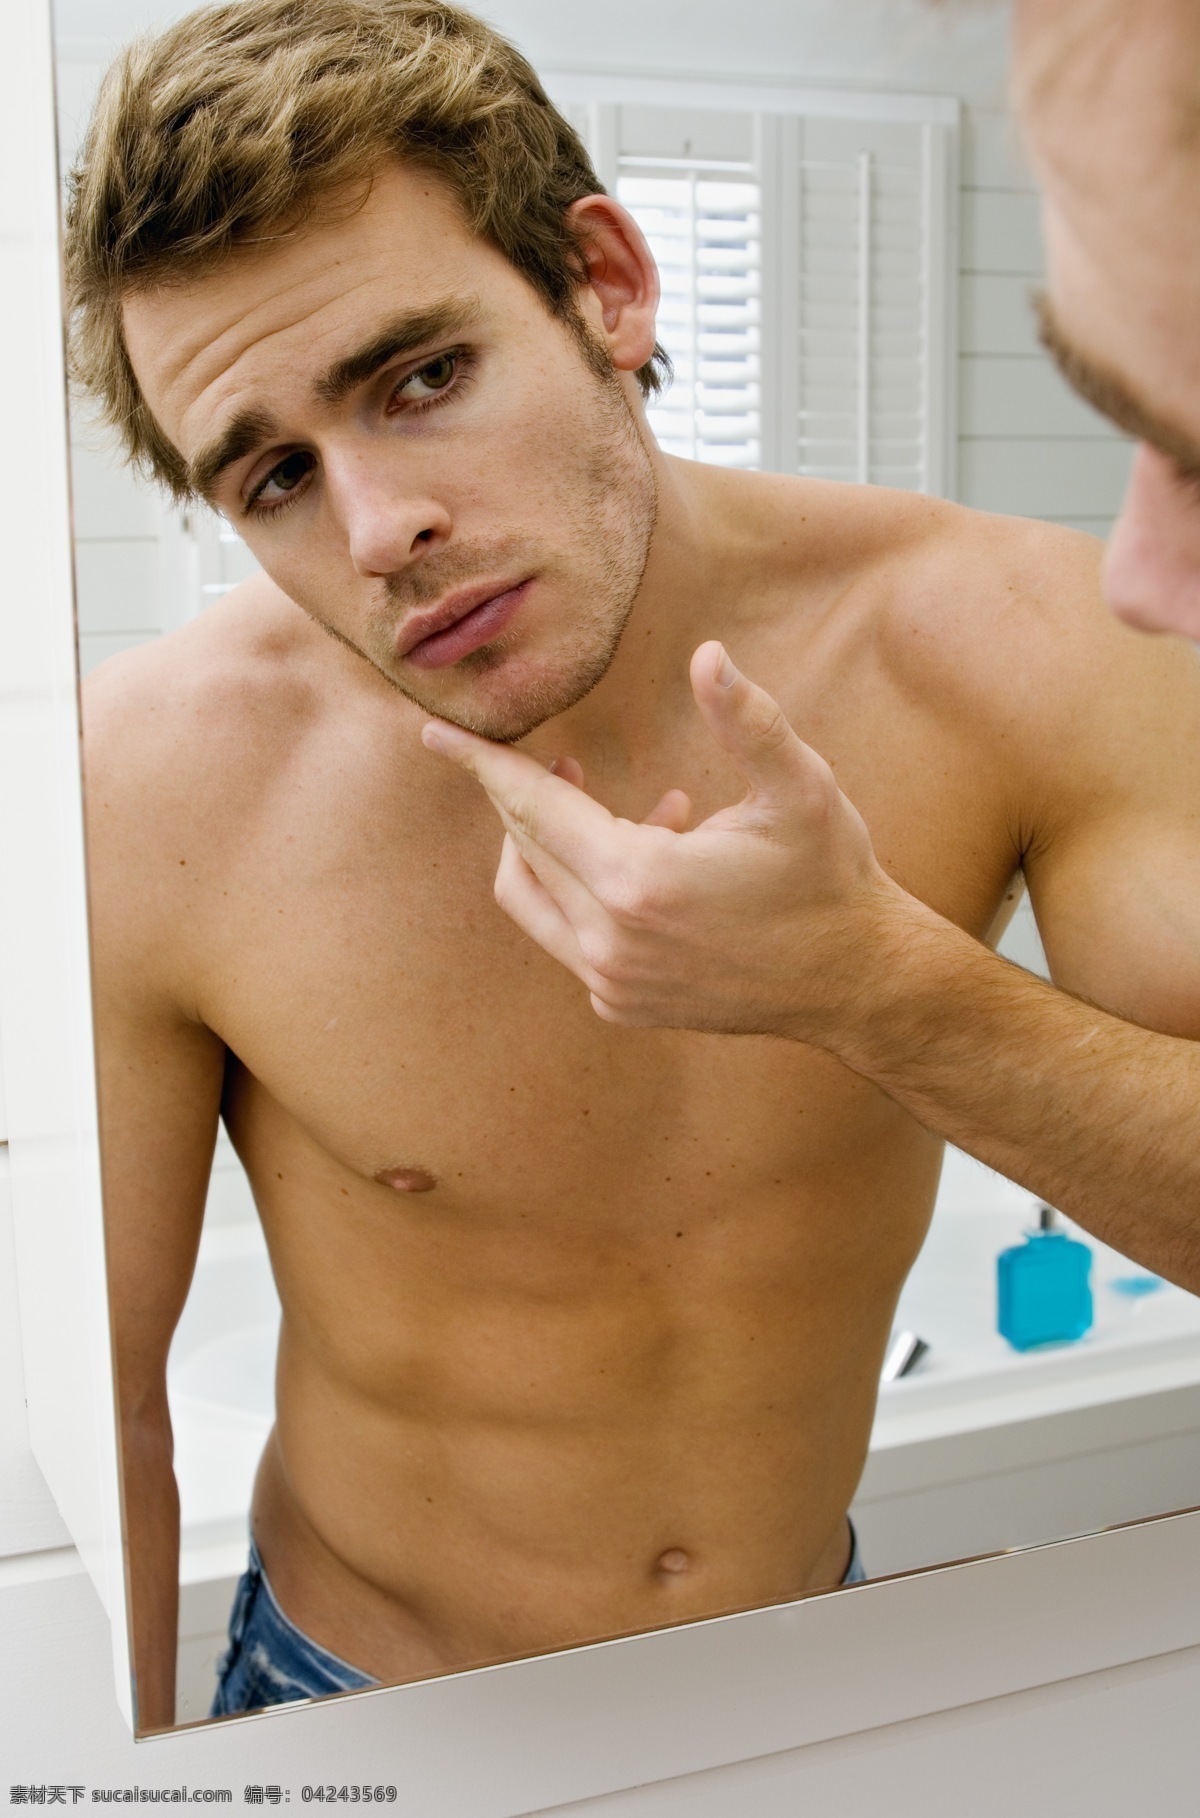 镜子 摆 酷 男人 浴室情侣 浴室 家居 生活 片子 人物摄影 人物图库 年轻男人 浴室里的男人 外国男人 摆酷的男人 照镜子的男人 男人图片 人物图片